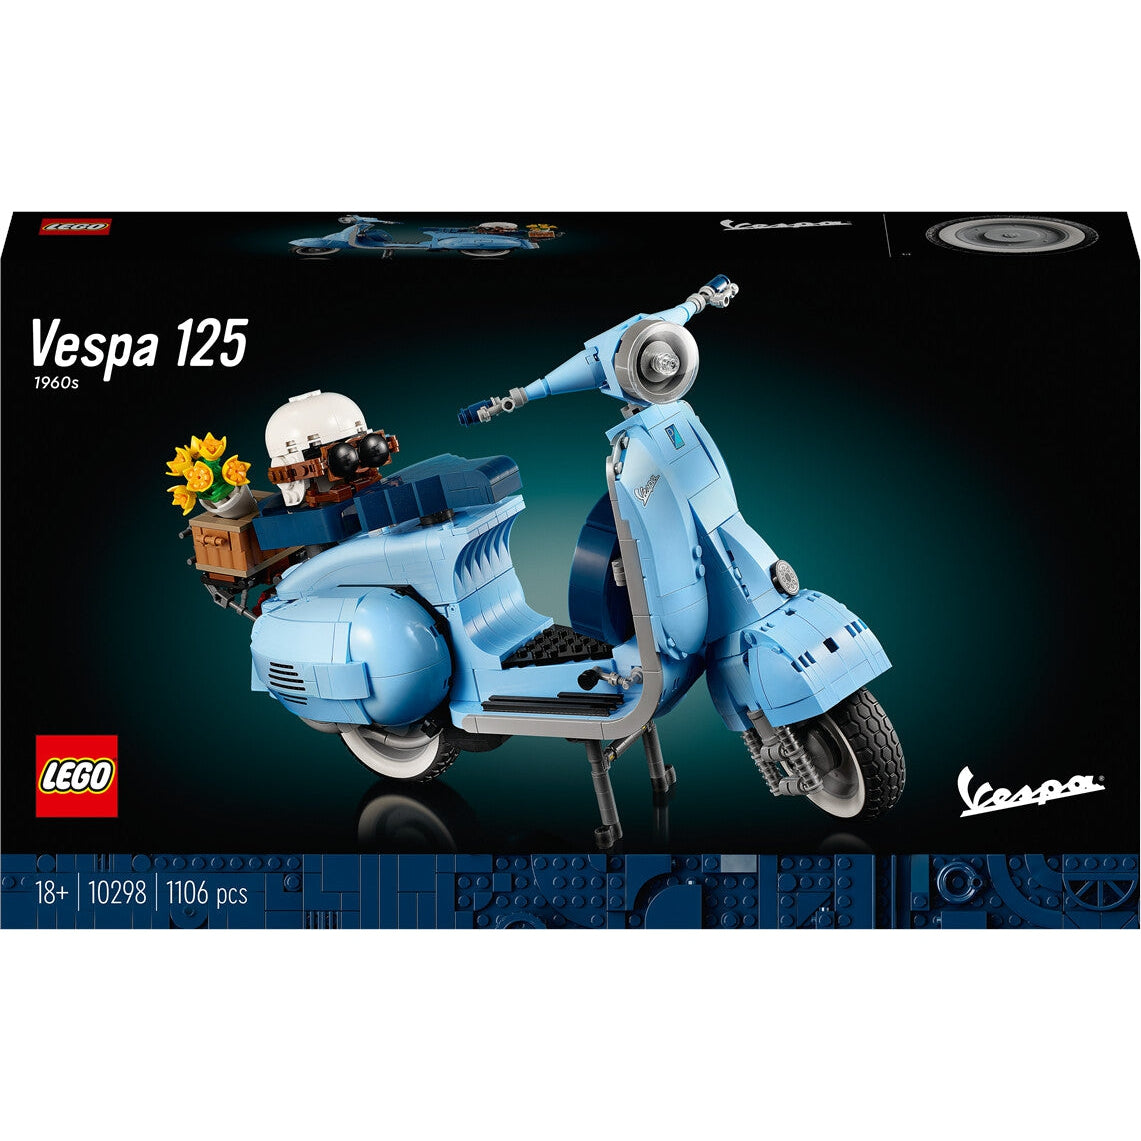 LEGO 10298 Creator Vespa 125